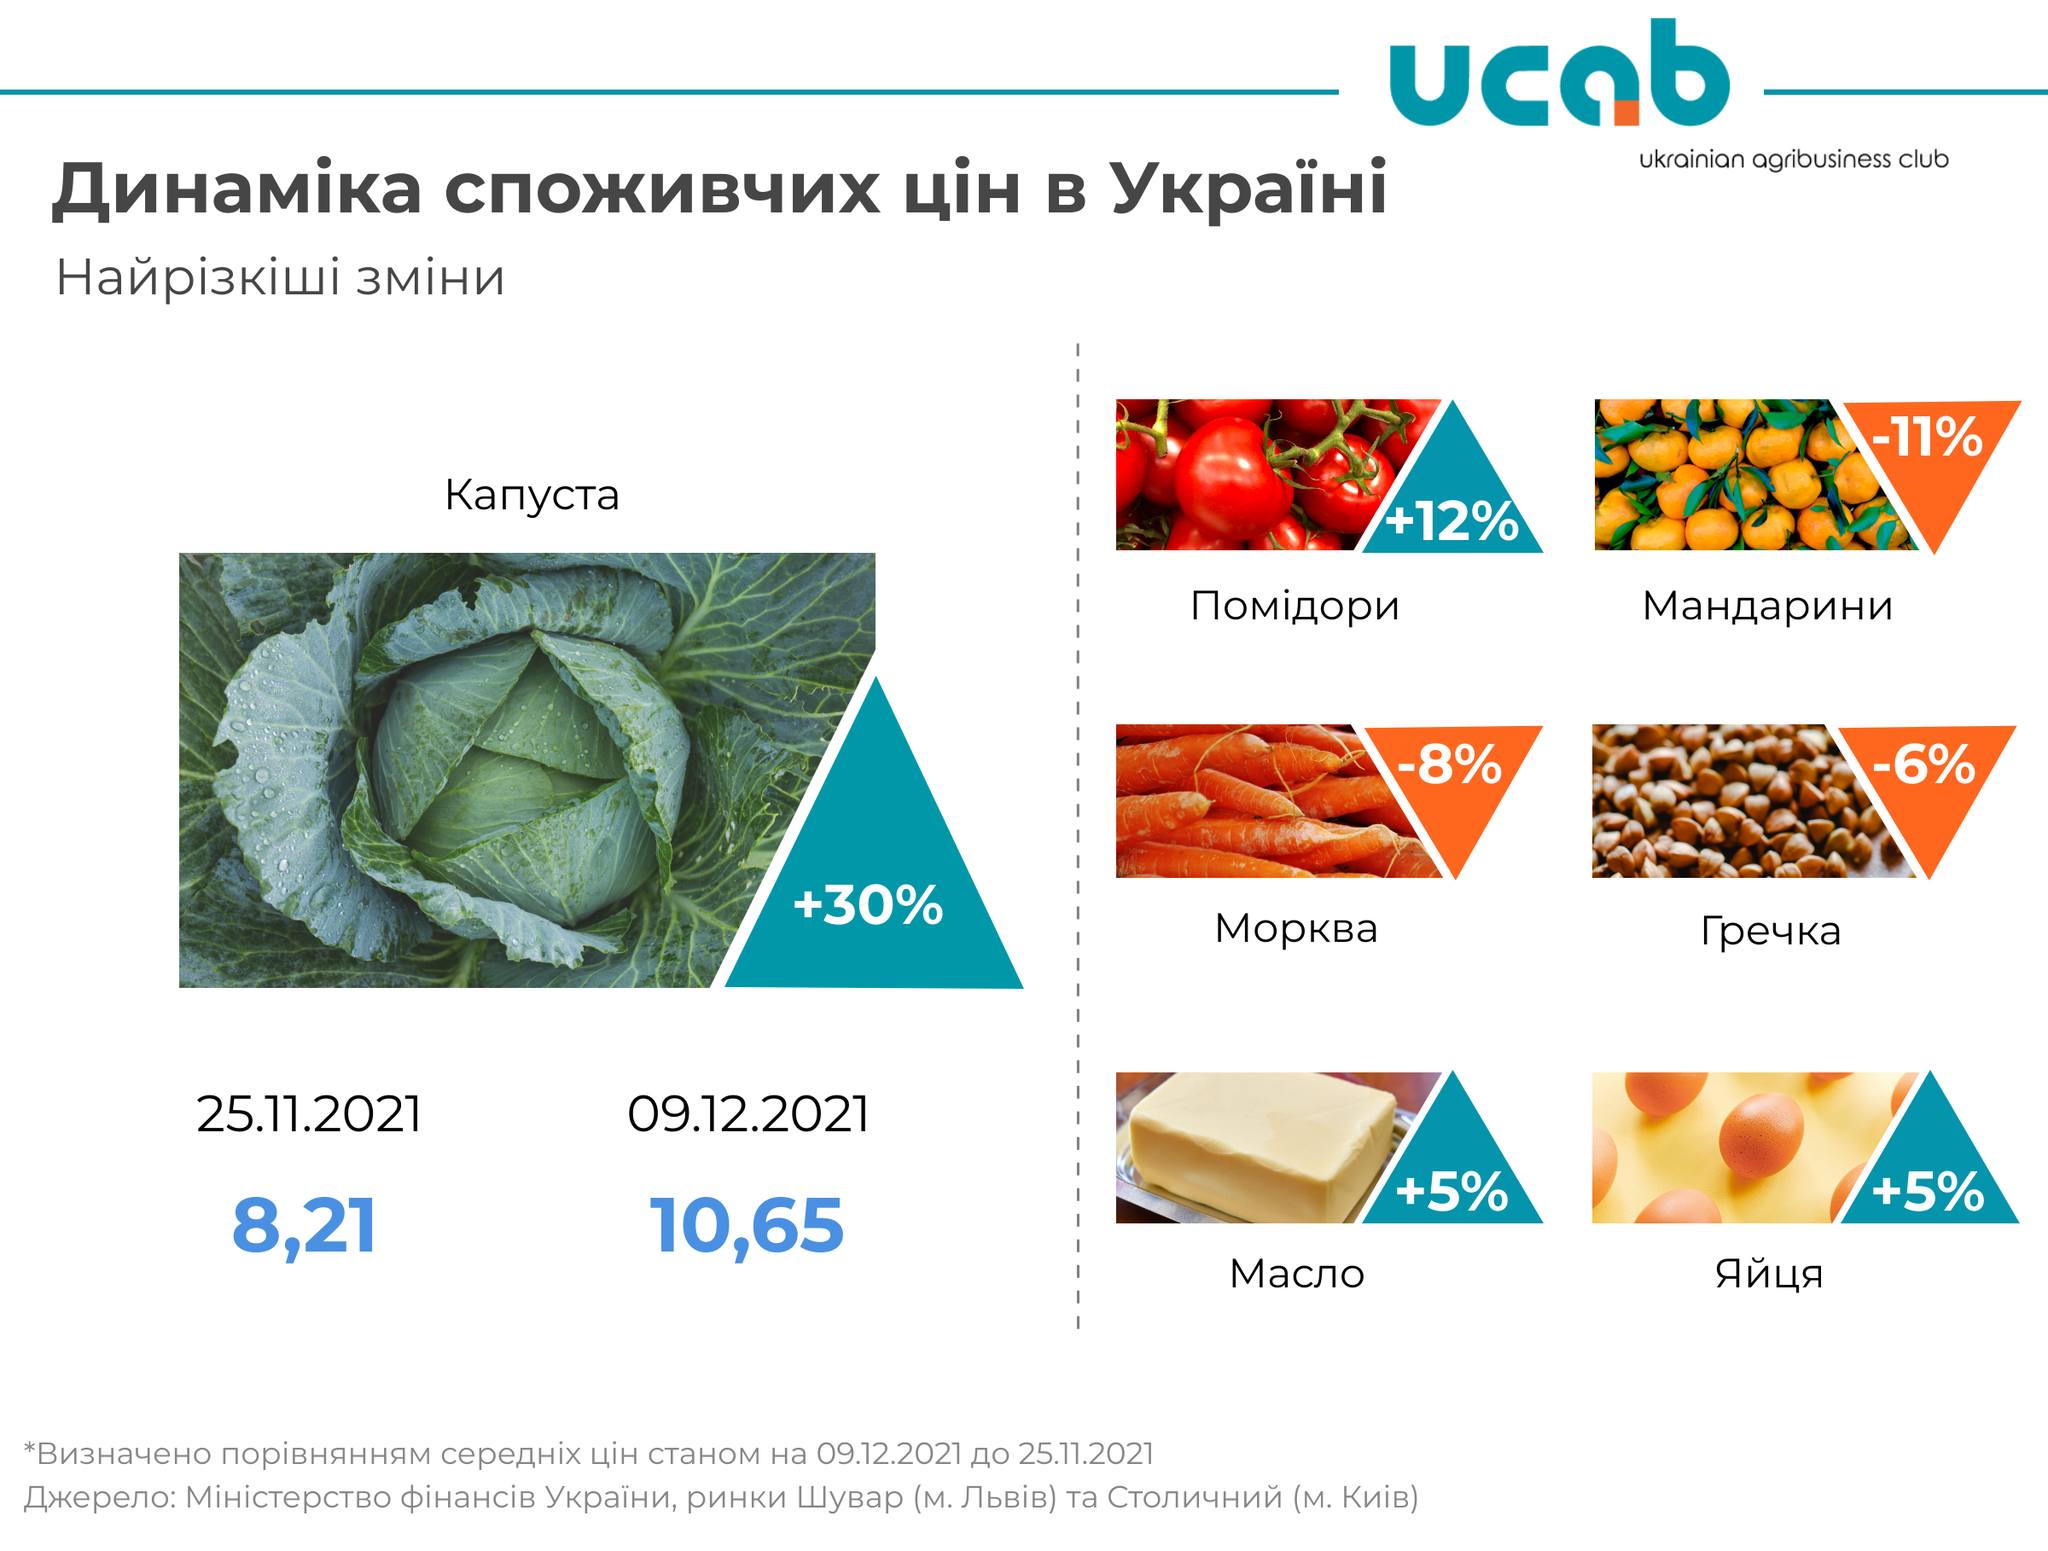 Как изменились цены на продукты в Украине: что подорожало больше всего  - фото 2